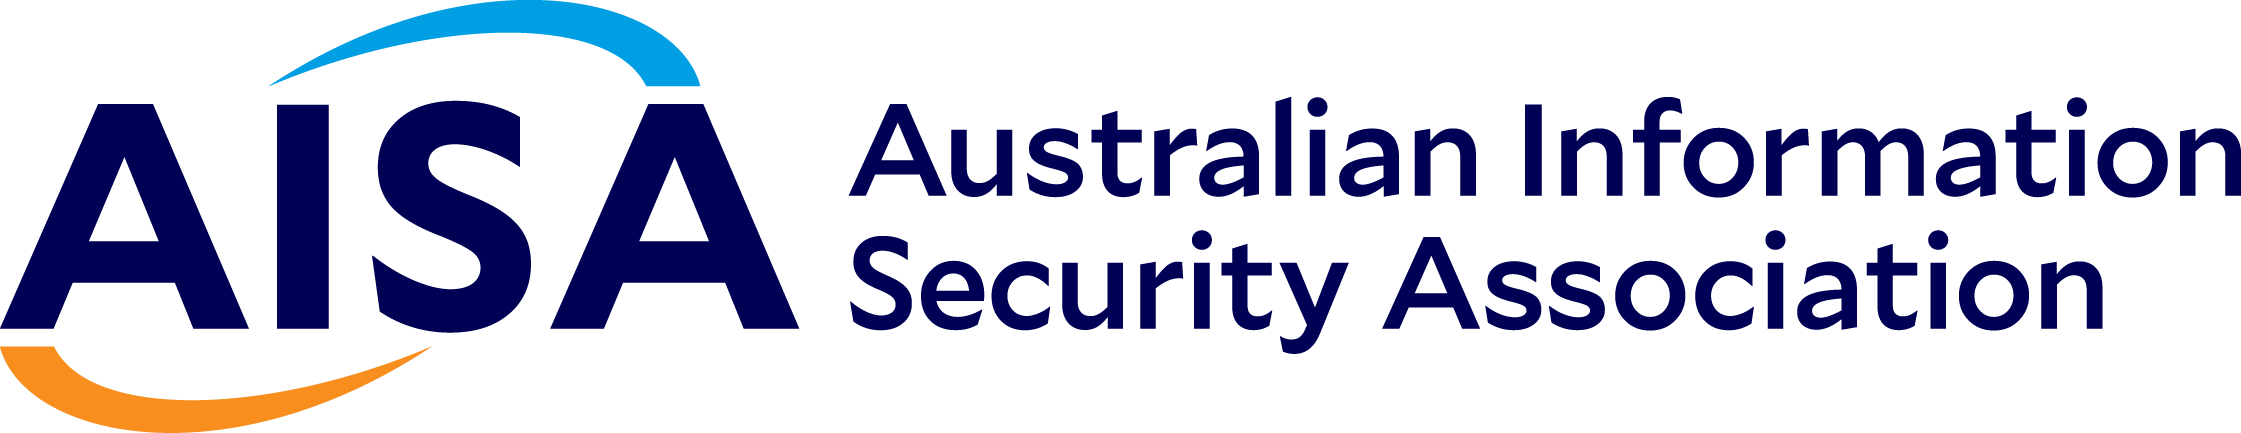 Logo australijskiego stowarzyszenia ds. bezpieczeństwa informacji AISA